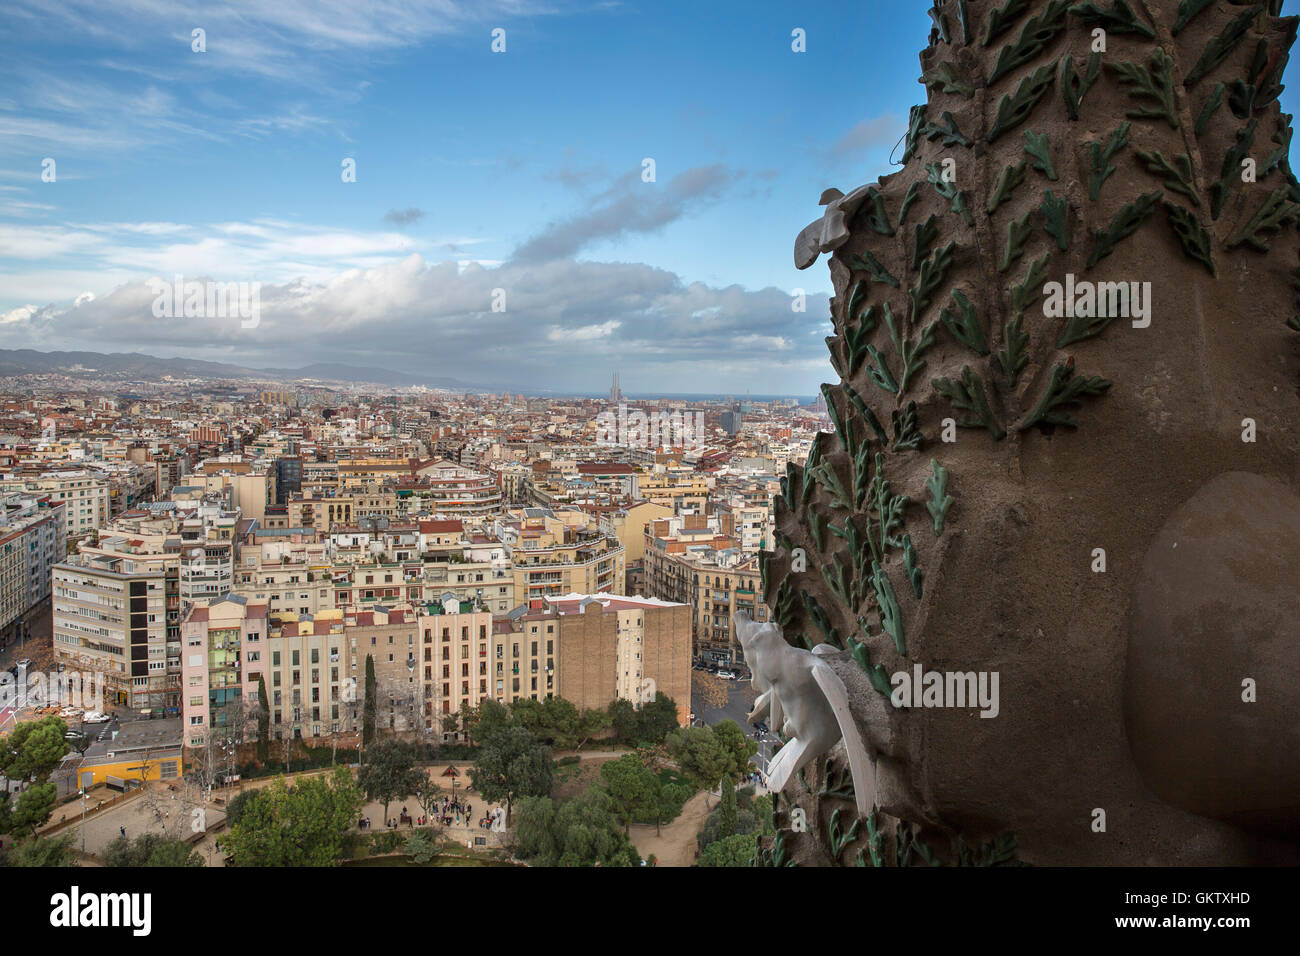 La ville de Barcelone, le point de vue de la Sagrada Familia en plein cœur de la ville. Banque D'Images